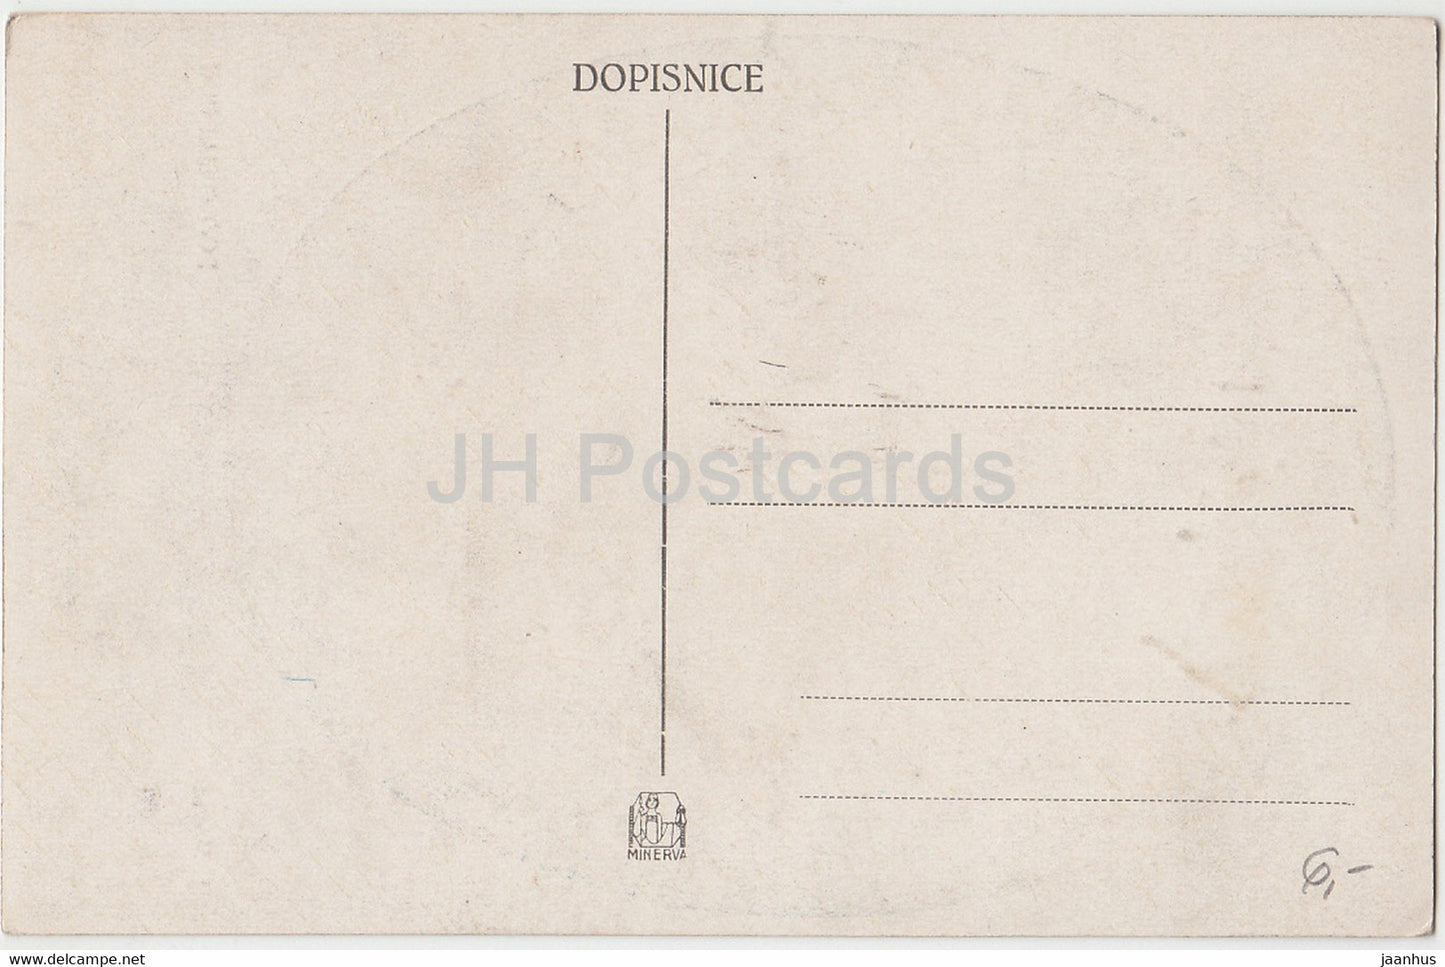 peinture de J. Manes - Pod Chalupou - carte postale ancienne - Art tchèque - République tchèque - inutilisée